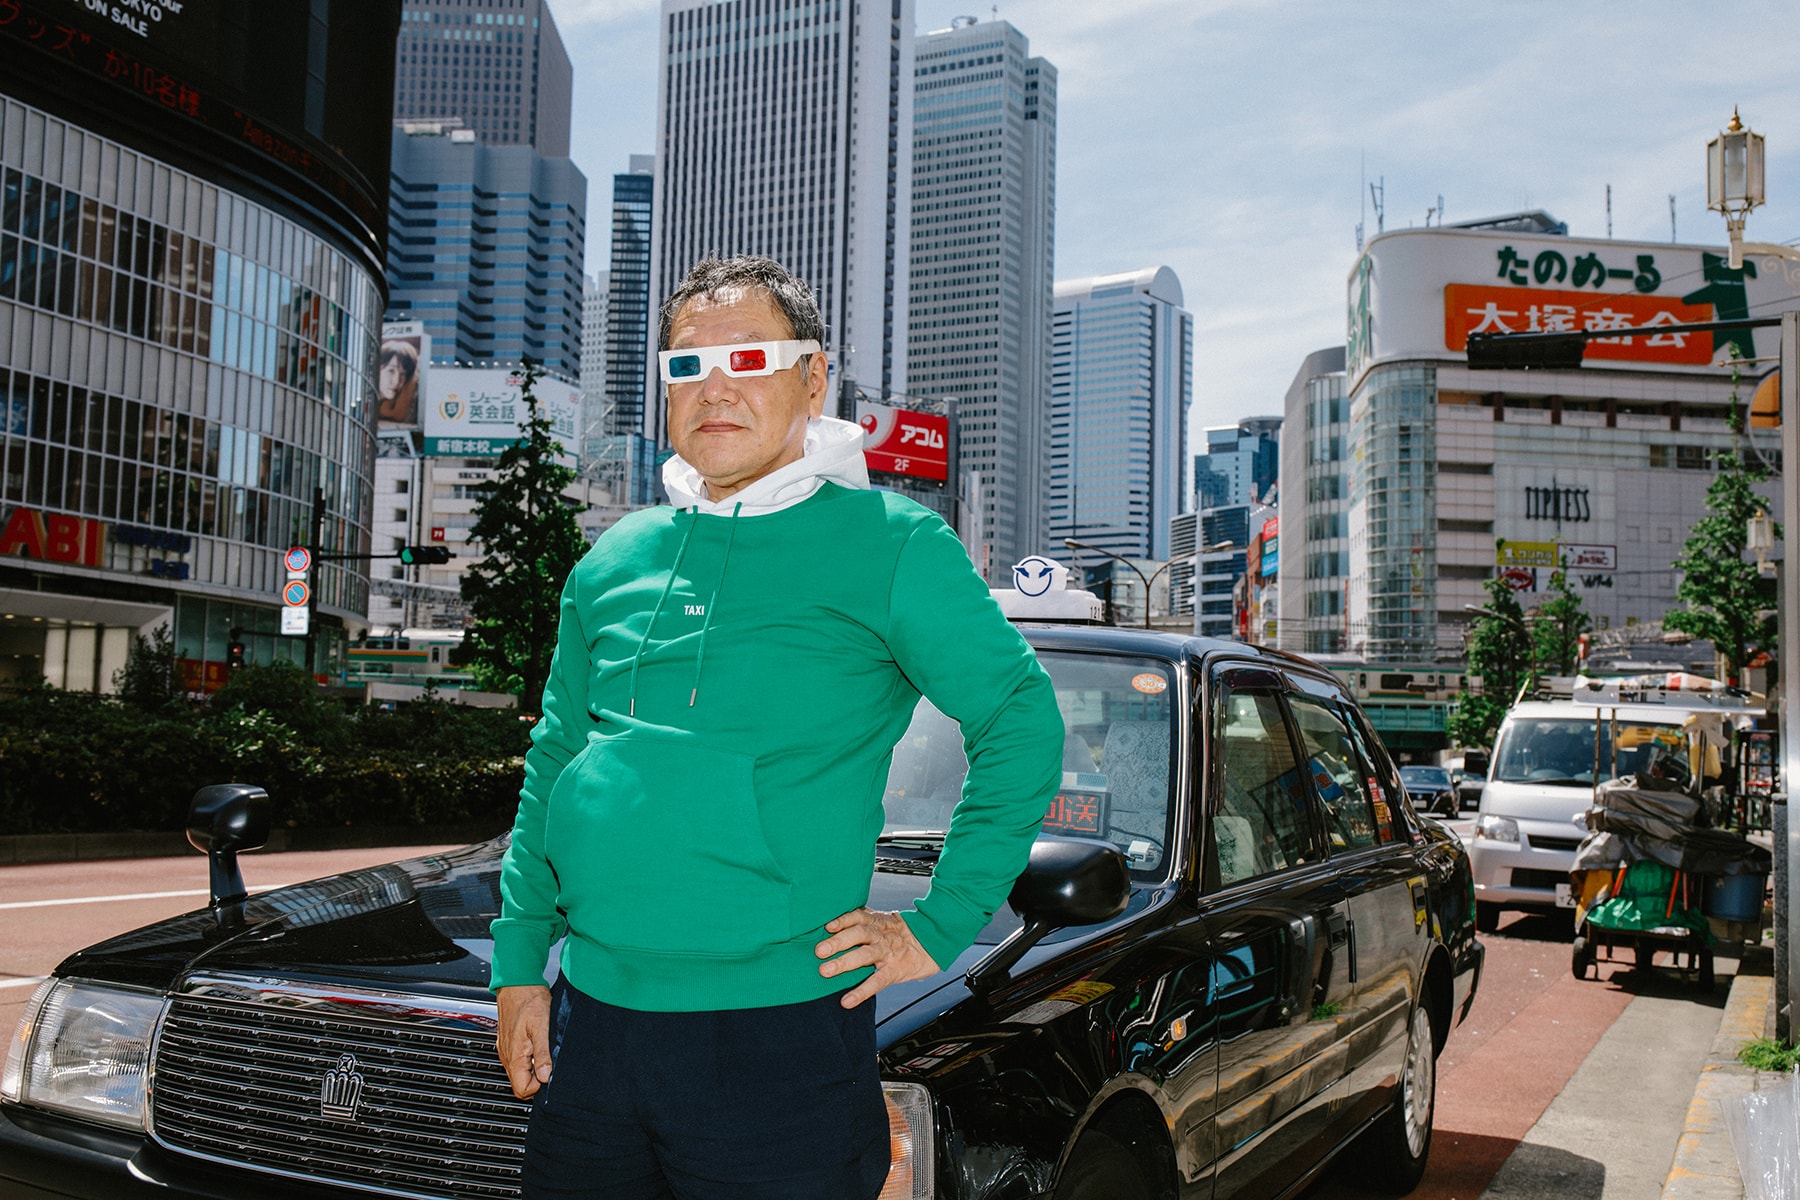 헬무트 랭 글로벌 택시 프로젝트 캡슐 컬렉션 홍콩 2018 helmut lang teases global taxi capsule collection